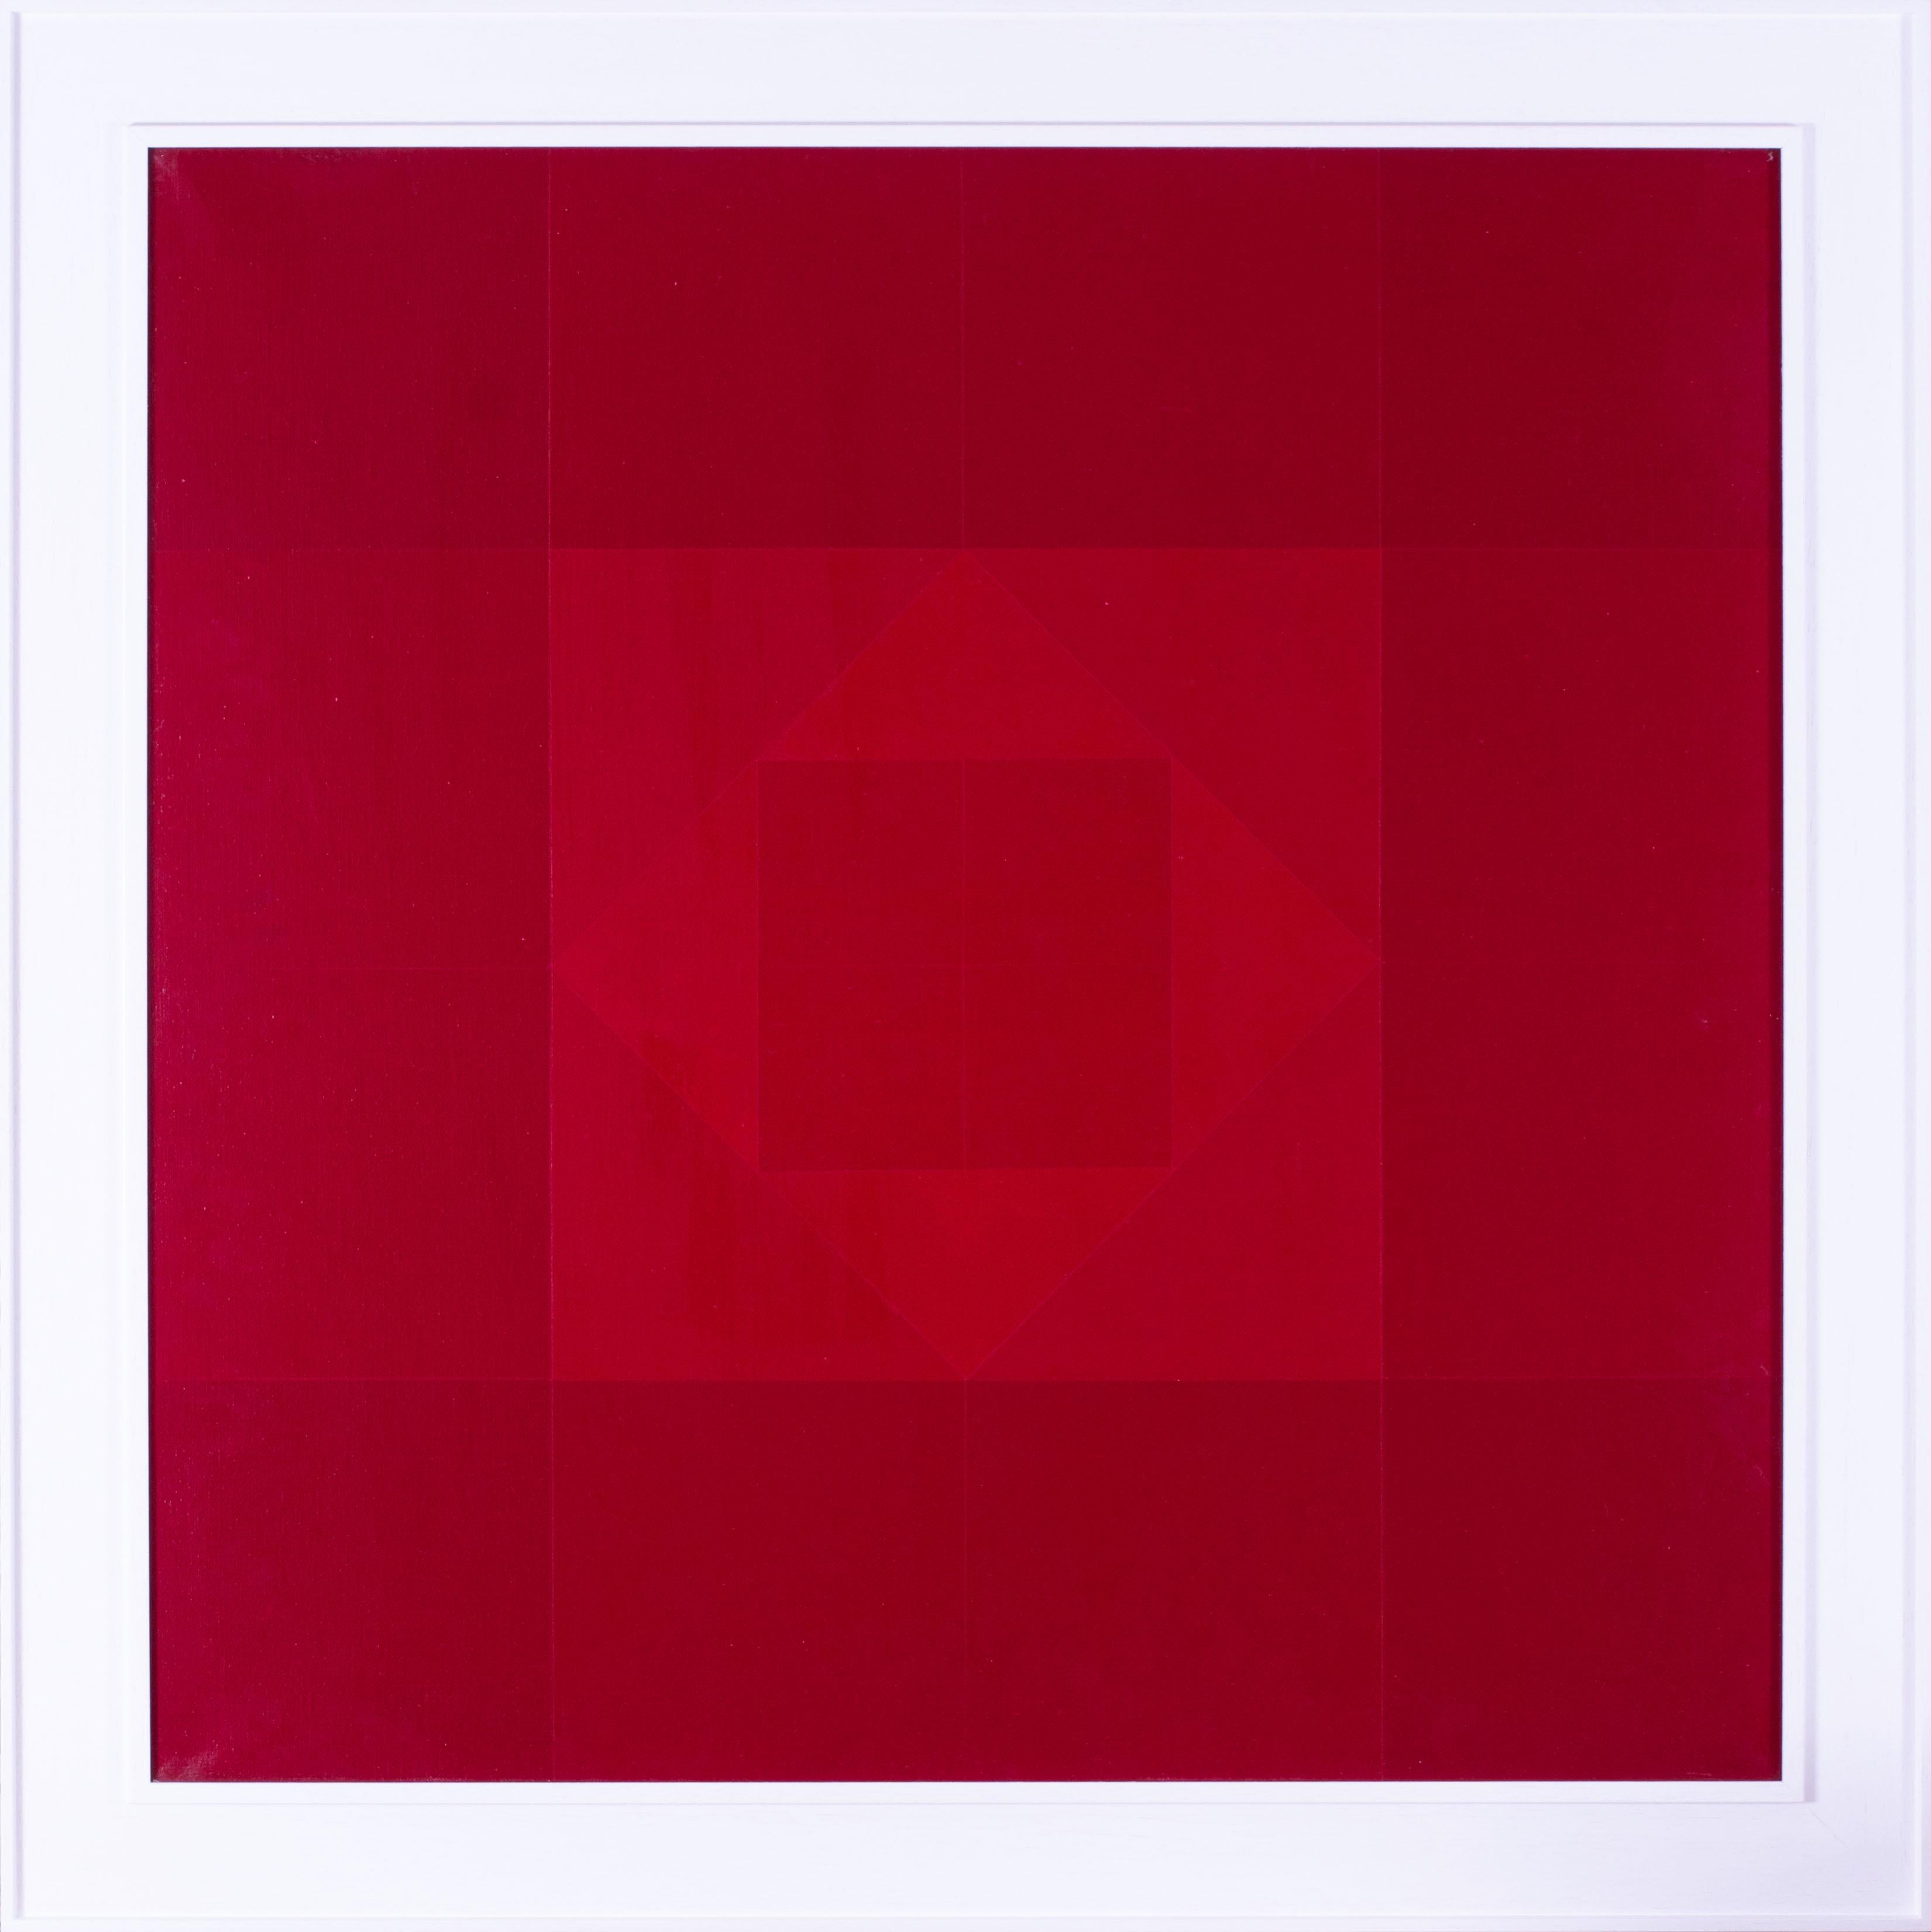 Claire Pichaud (Französisch 1935 - 2017)
Rotes Quadrat
Acryl auf Leinwand
31.1/2 x 31,1/2 Zoll (80 x 80 cm.)
Signiert (auf der Rückseite des Keilrahmens)

Weitere Exemplare in gleicher Größe sind in unserer Sammlung erhältlich